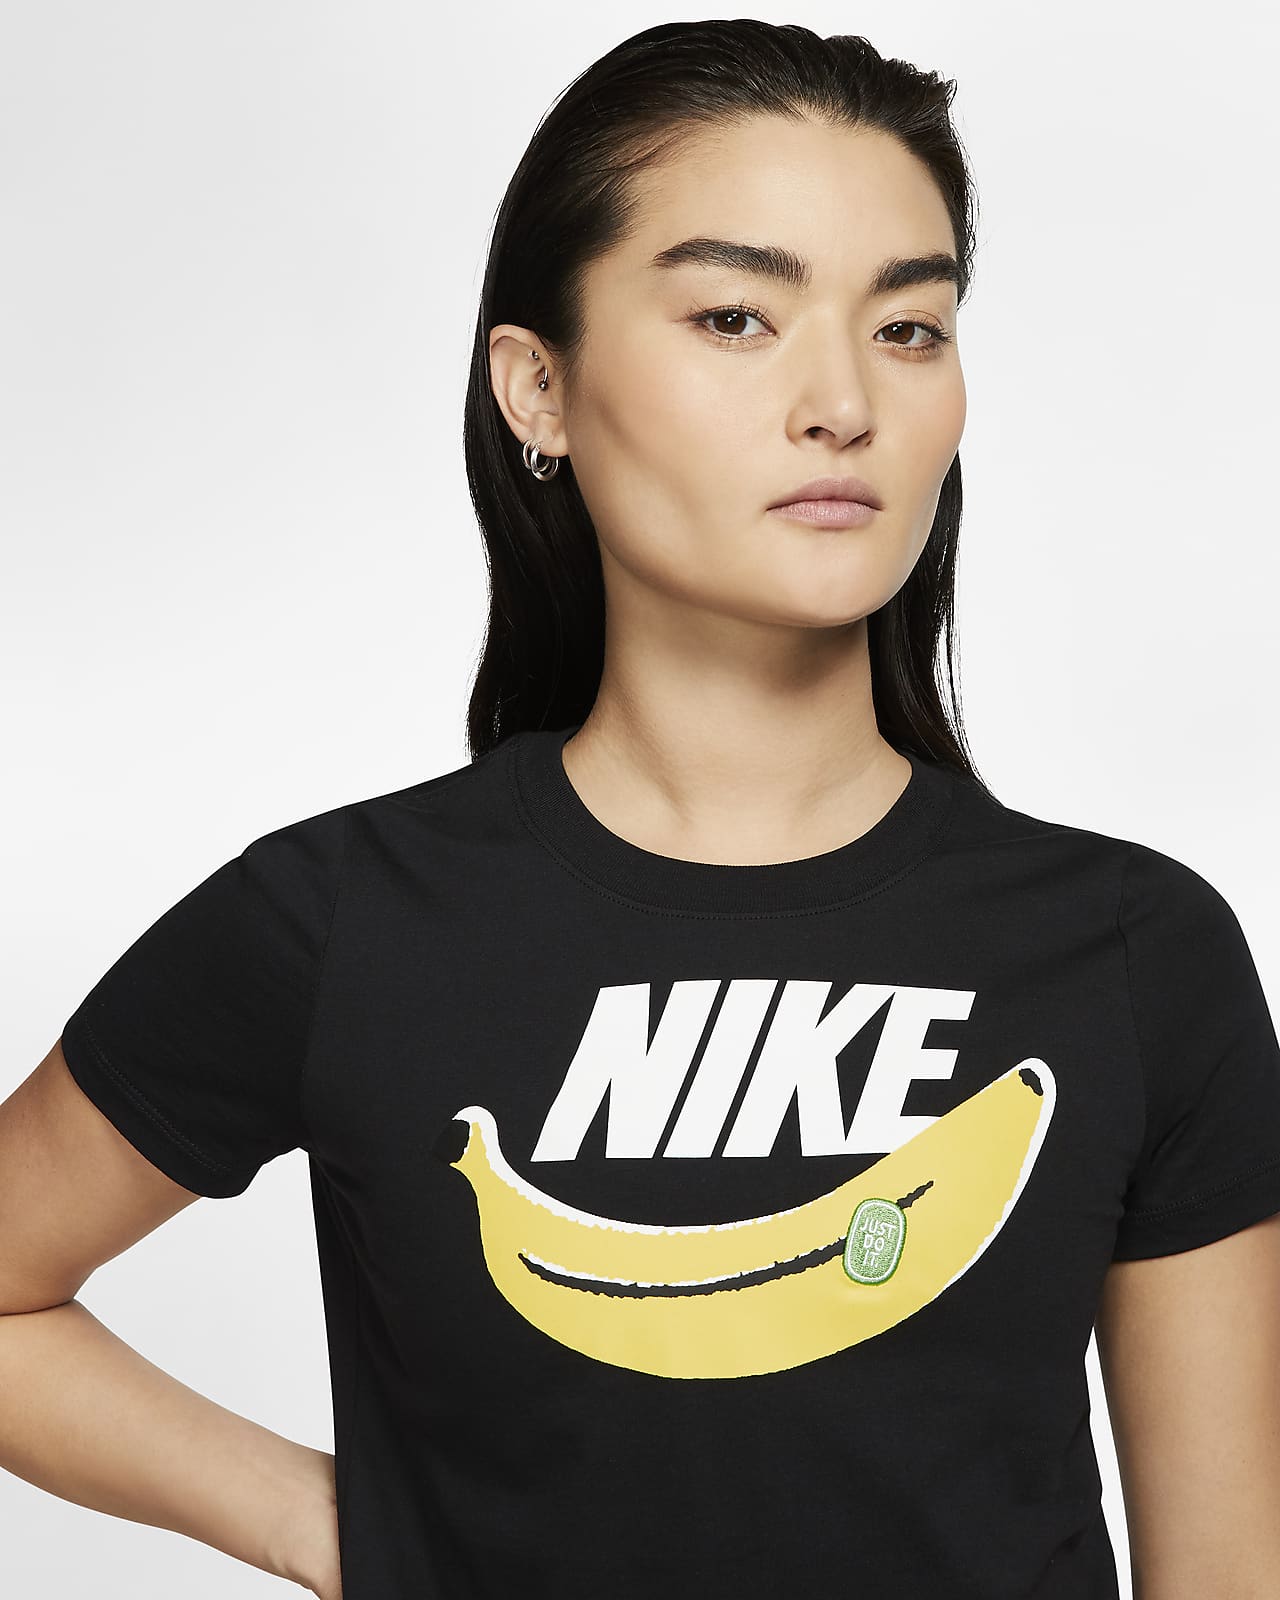 nike banana shirt